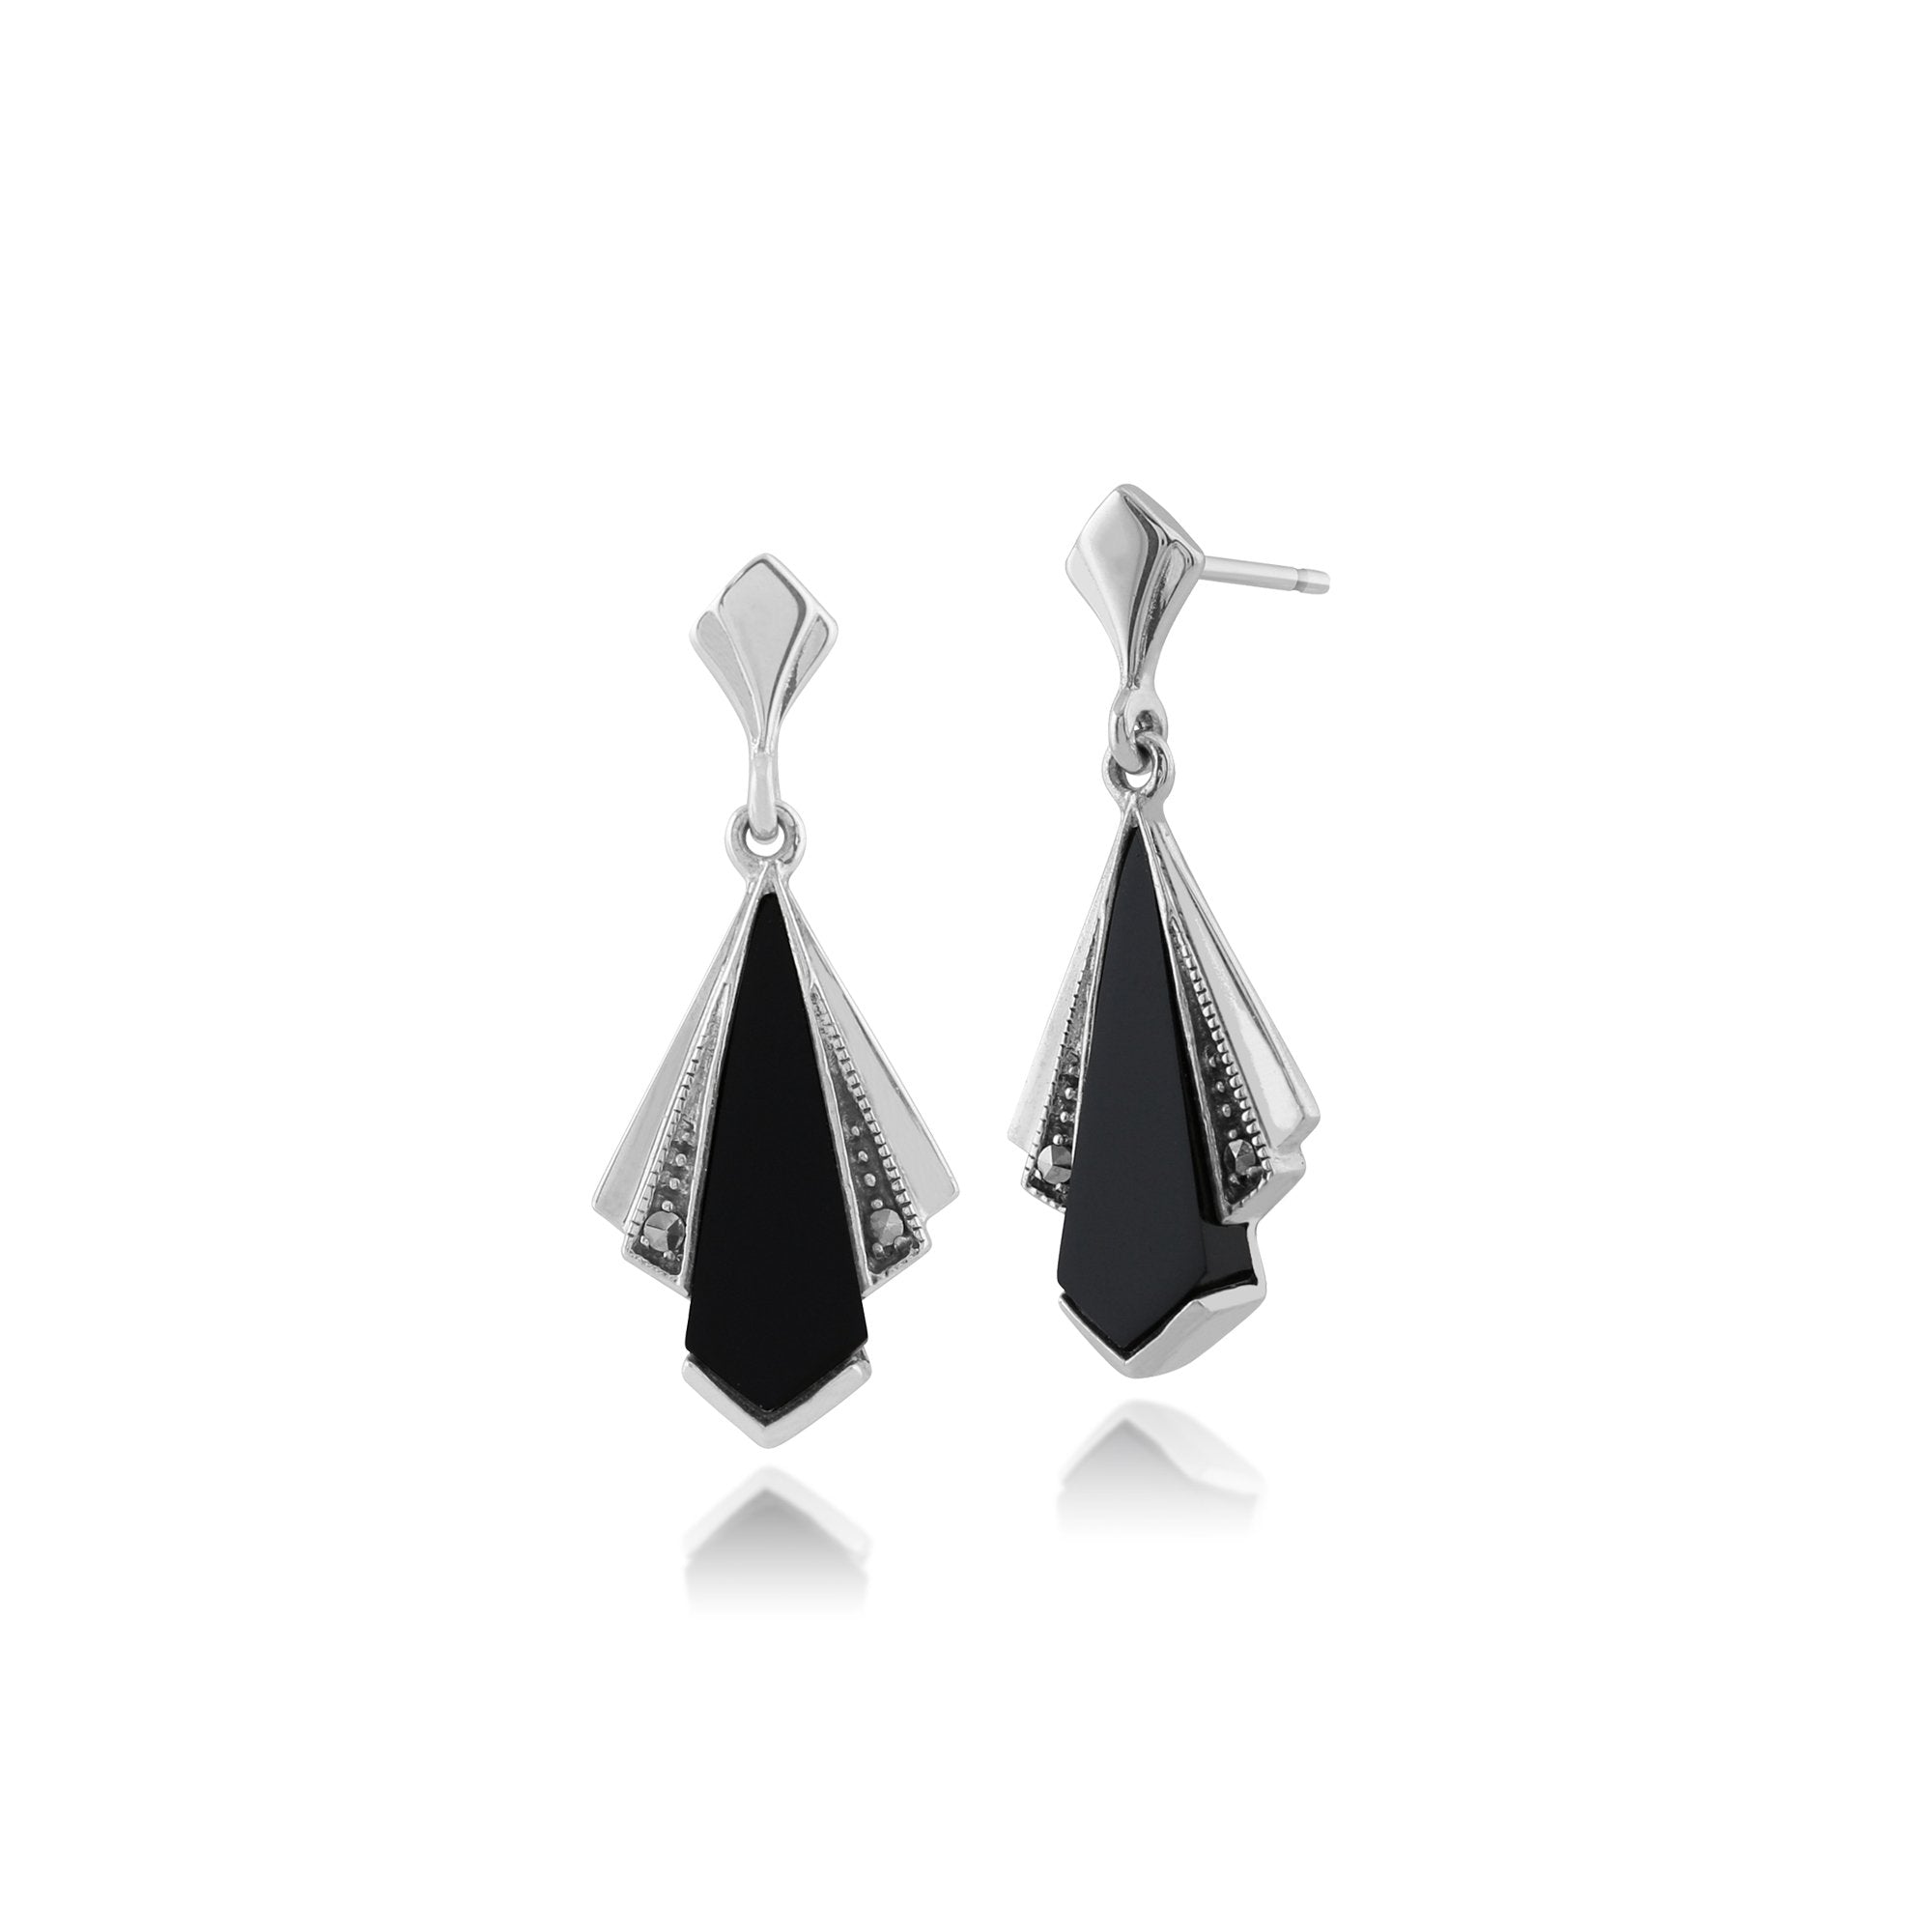 Art Deco Style Black Onyx & Marcasite Fan Drop Earrings in 925 Sterling Silver